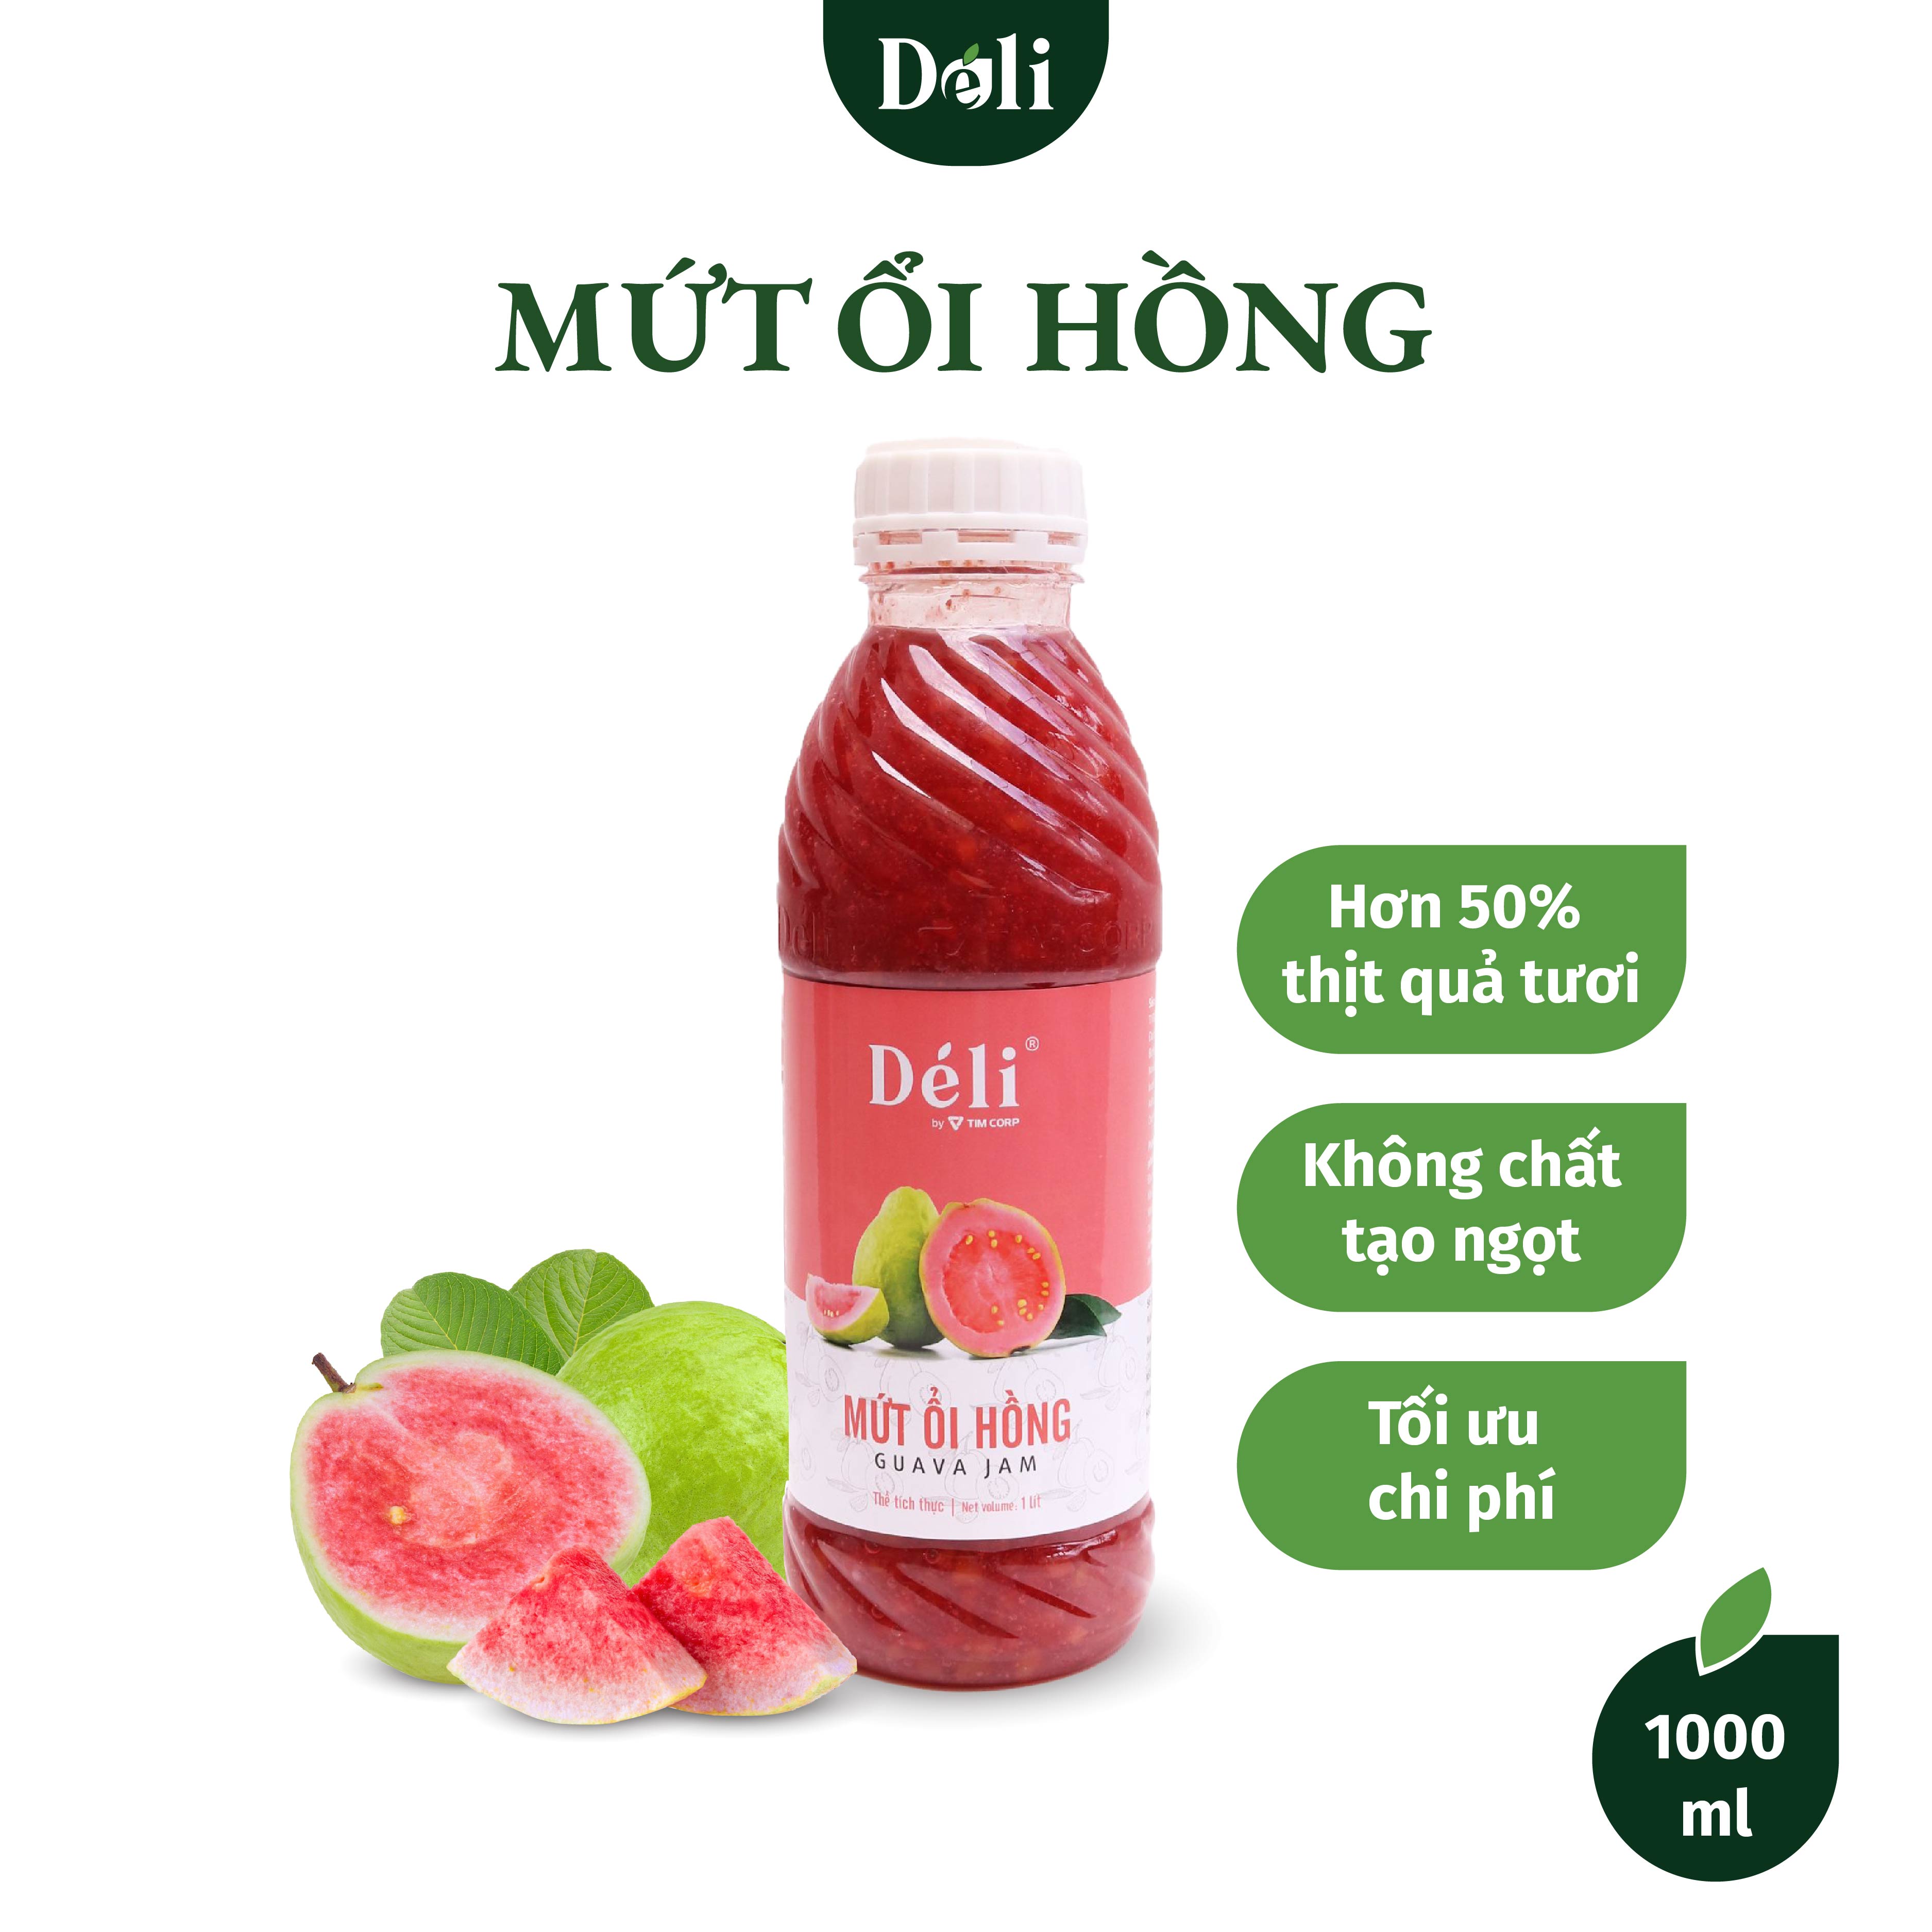 Mứt Ổi Hồng Déli chai 1L [CHUYÊN SỈ] HSD:18 tháng, nguyên liệu pha chế trà trái cây, soda,..